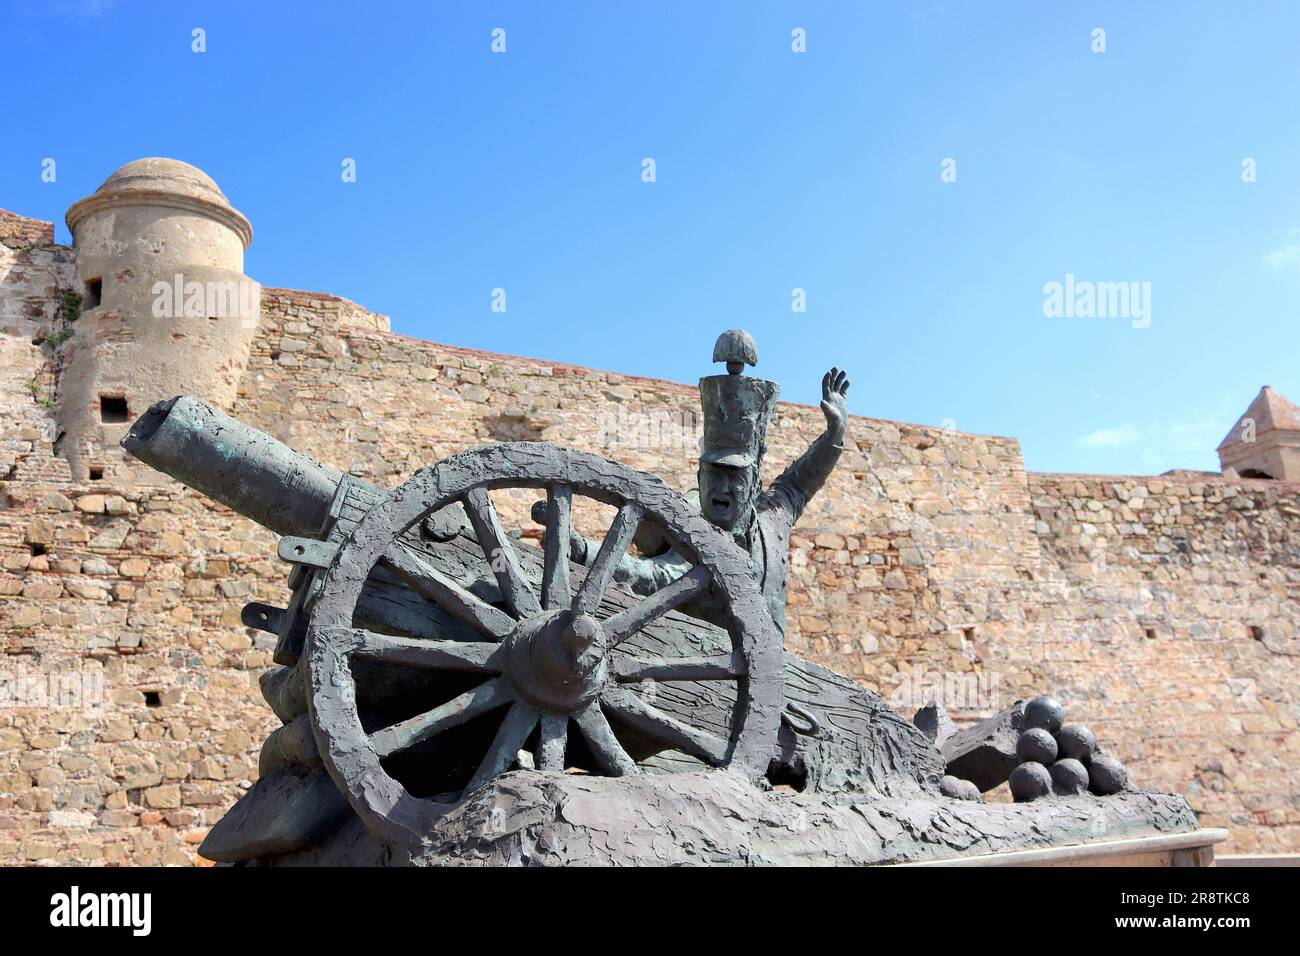 Une sculpture en bronze commémorant la fondation en 300th du régiment d'artillerie mixte No 30 de Ceuta, par le sculpteur Antonio Romero Vallejo. Banque D'Images